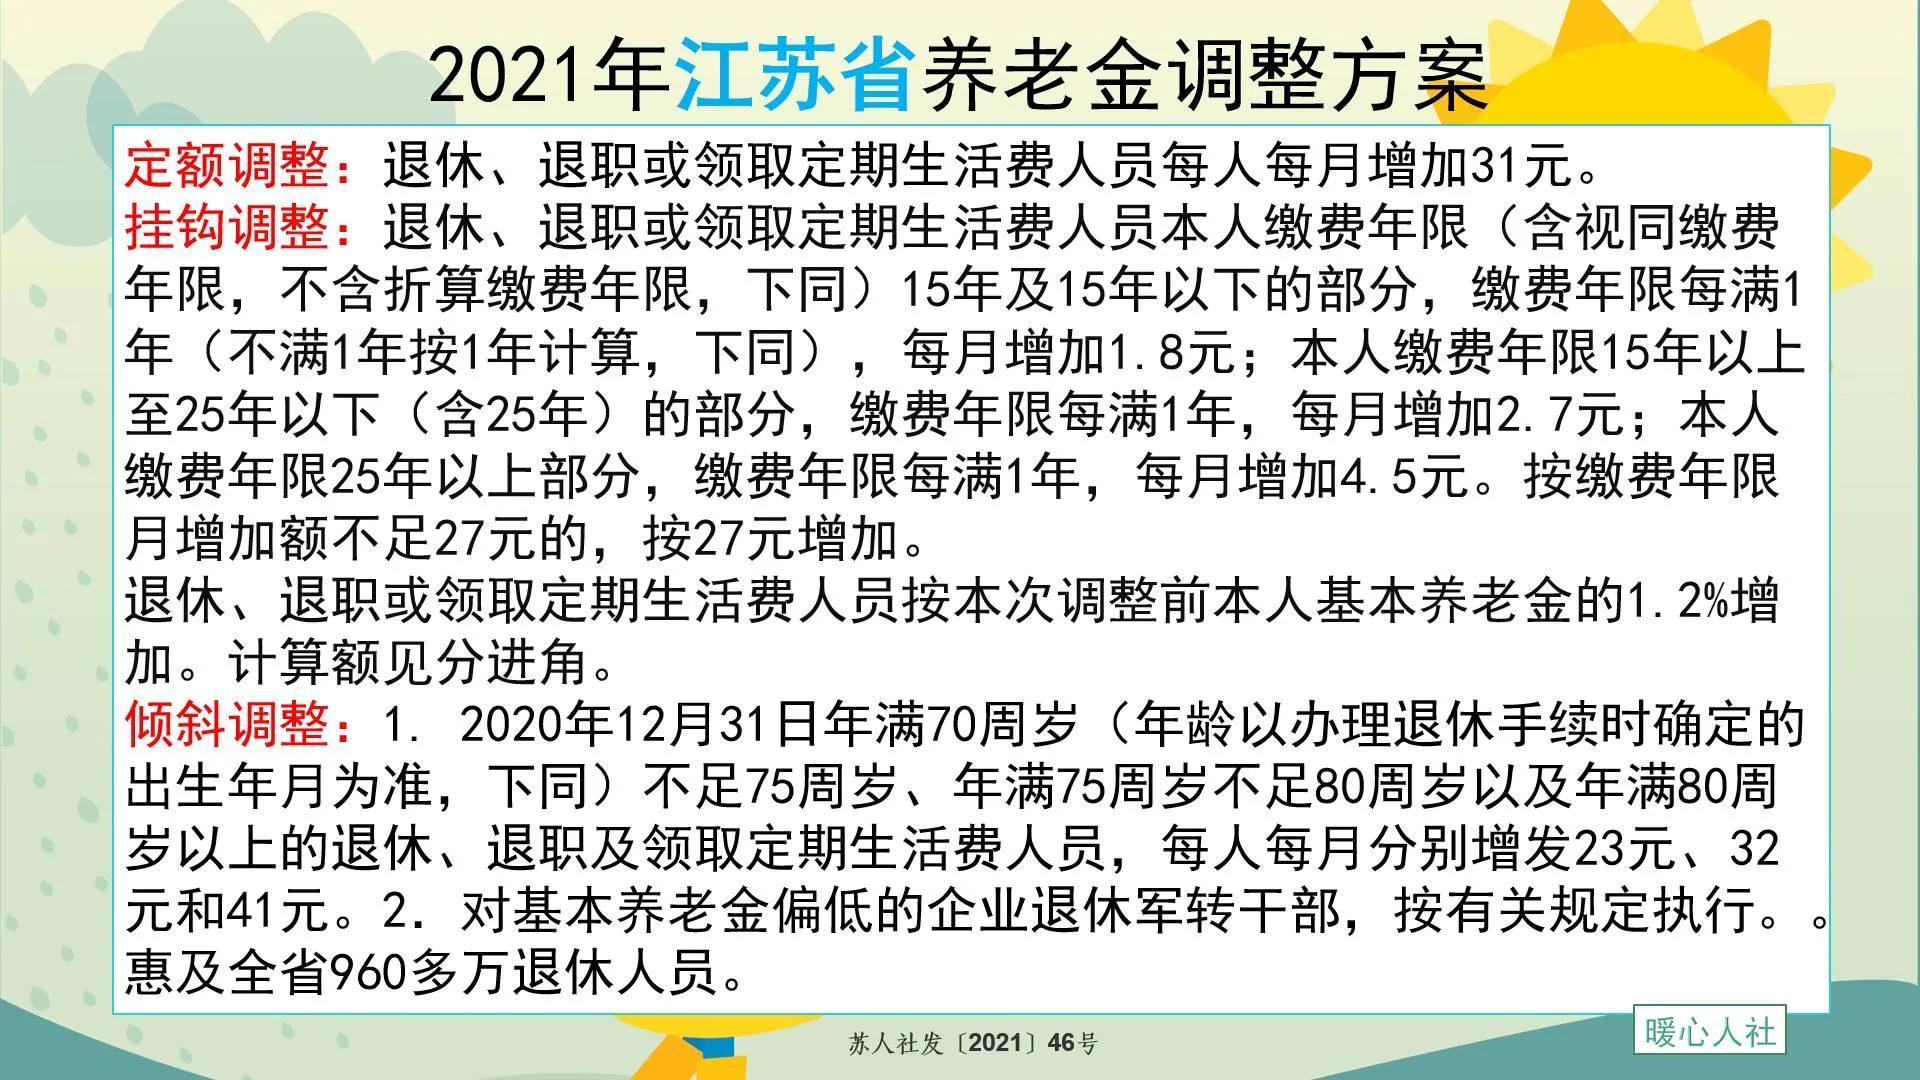 中国社会科学院预测，中国的养老金将在2035年用完。 - 知乎